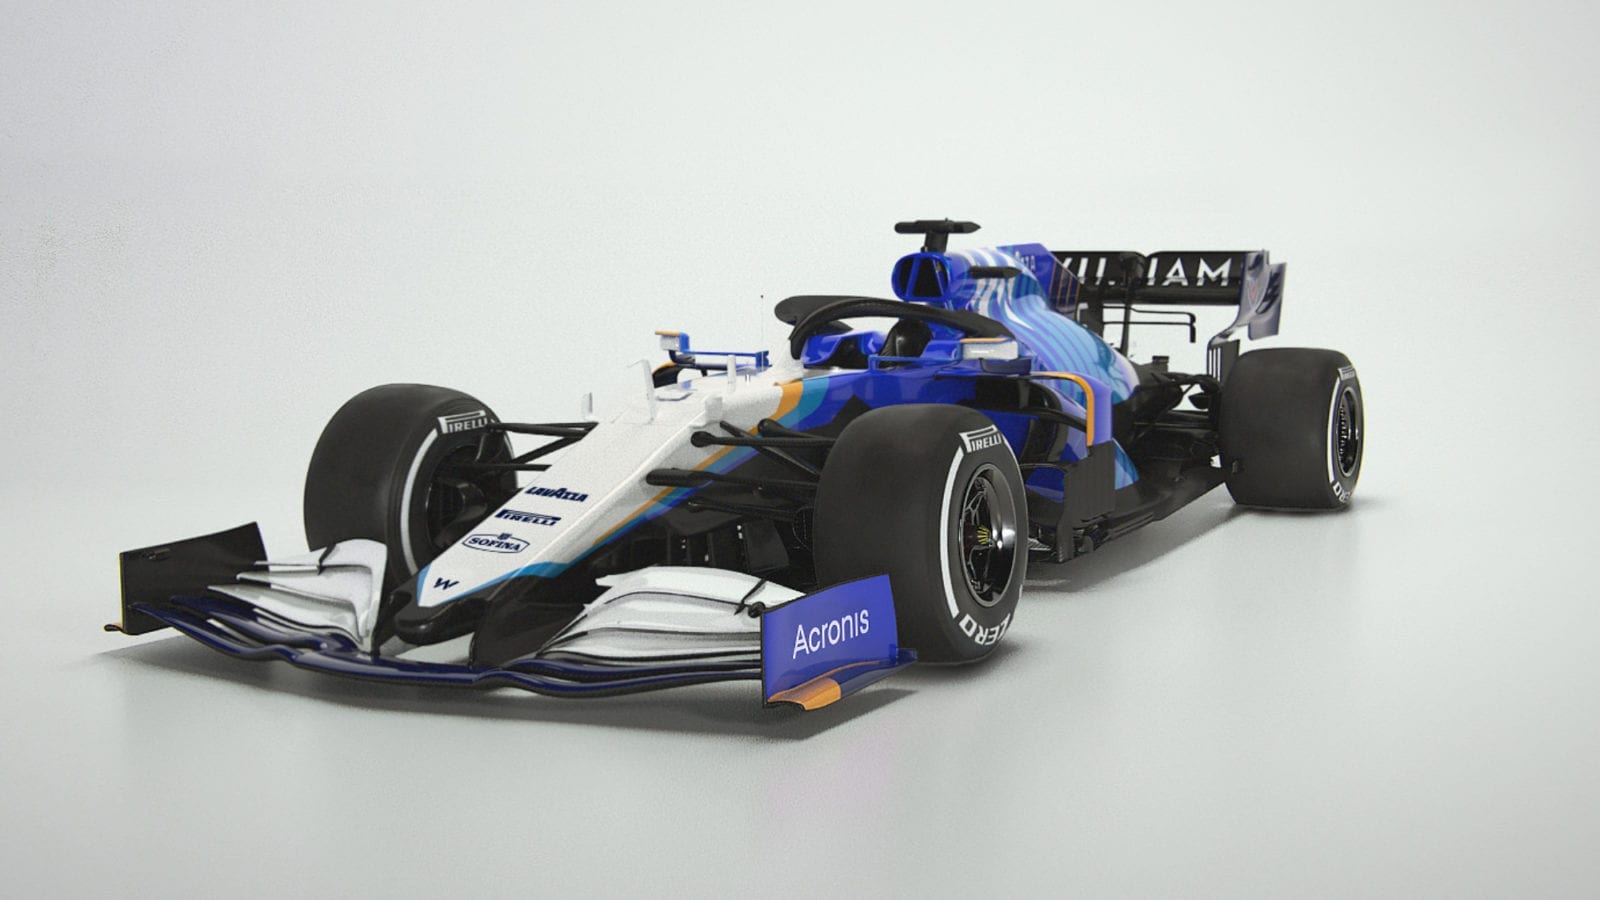 Williams FW43B 2021 F1 Car